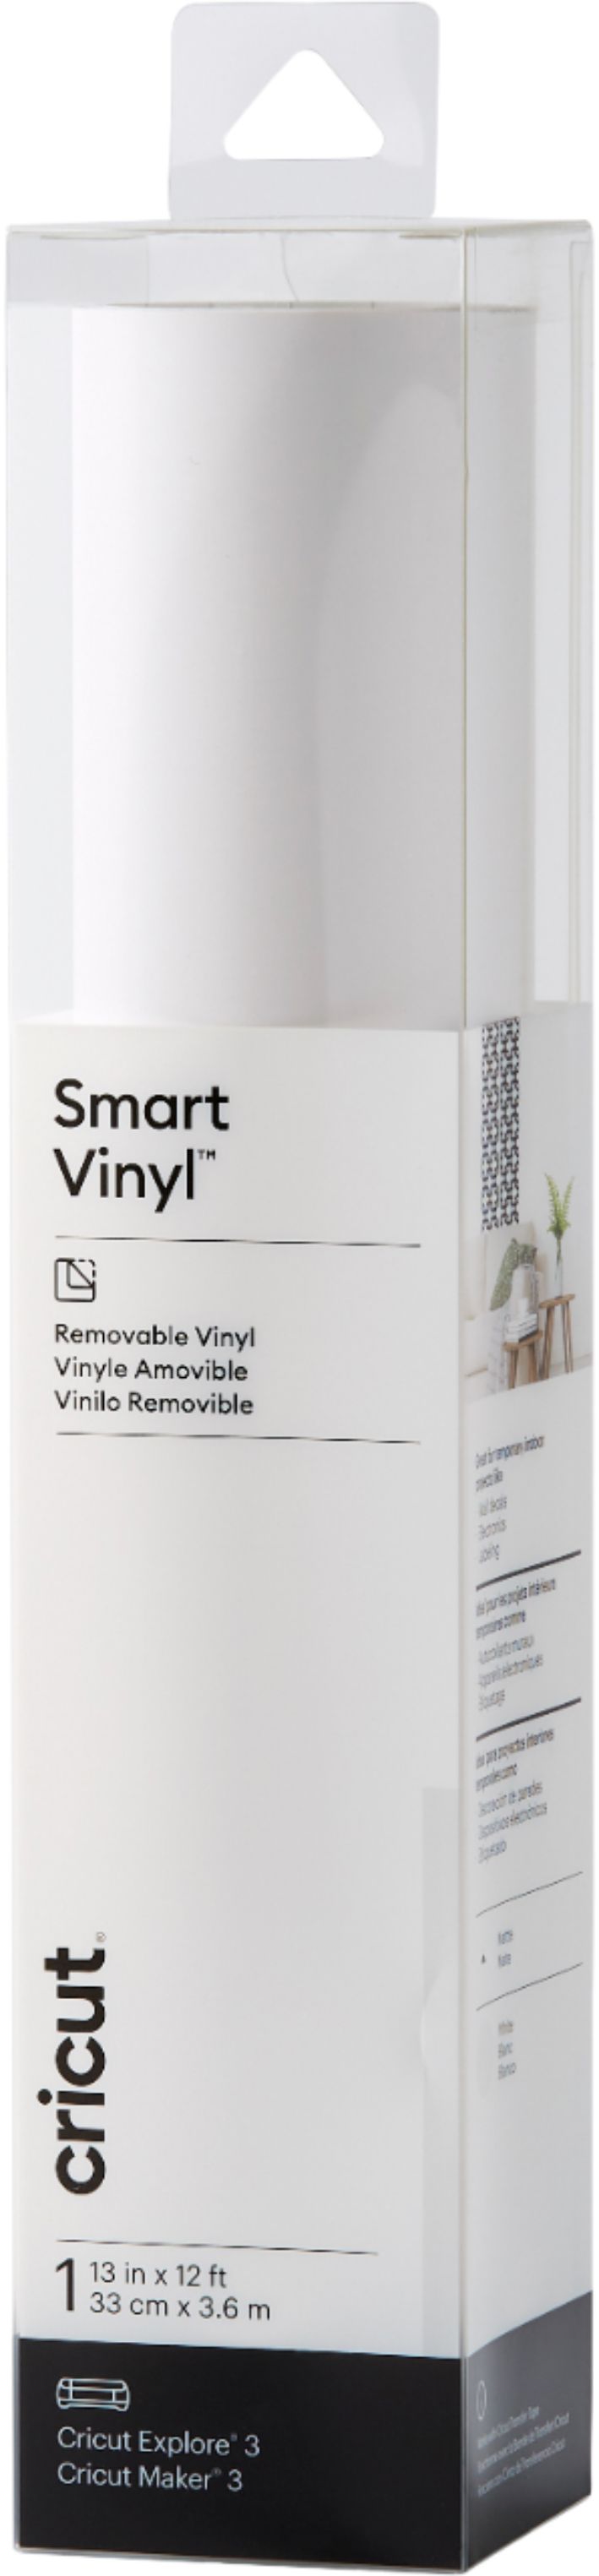 Smart Vinyl Removable Cricut 33 cm x 6.4 m